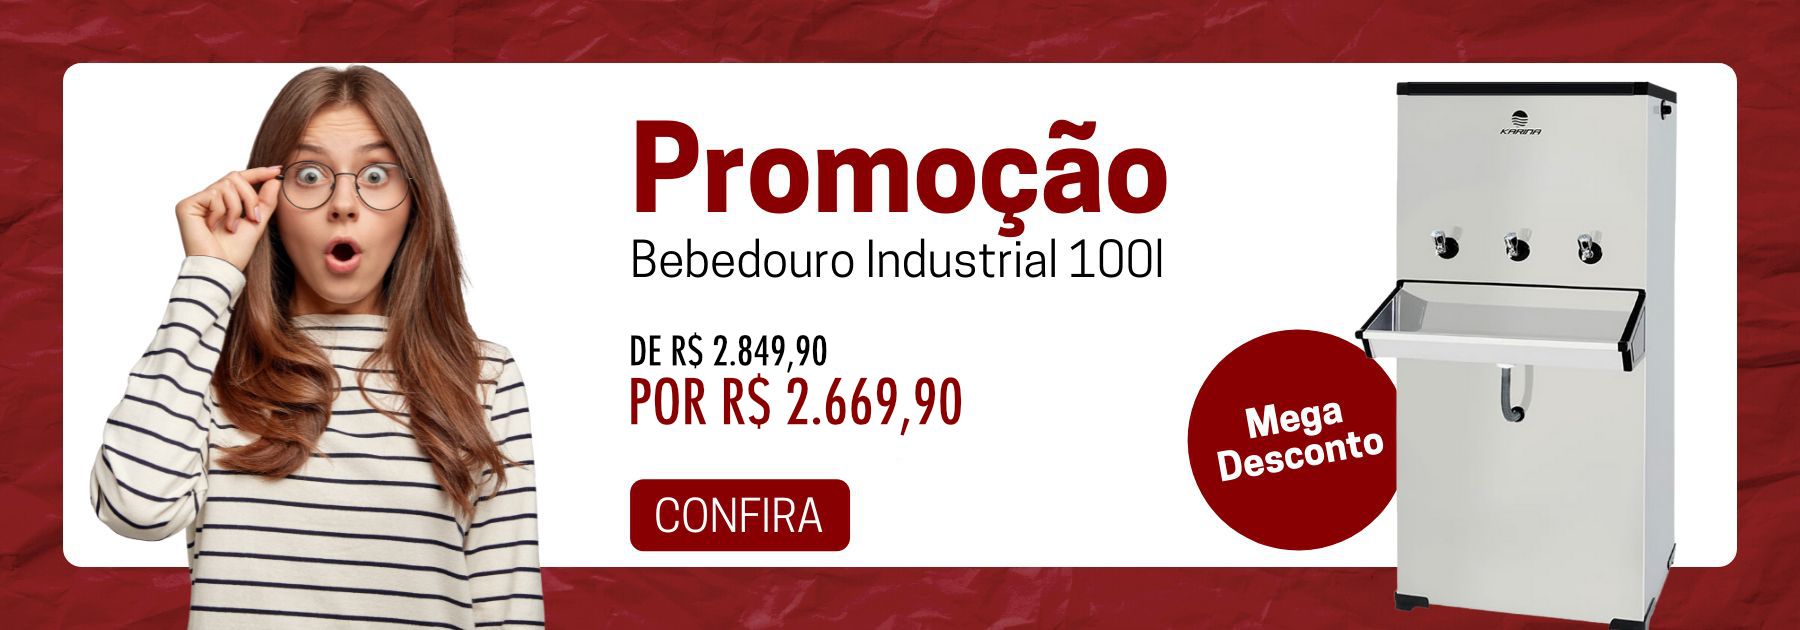 Promoção Bebedouro Industrial 100